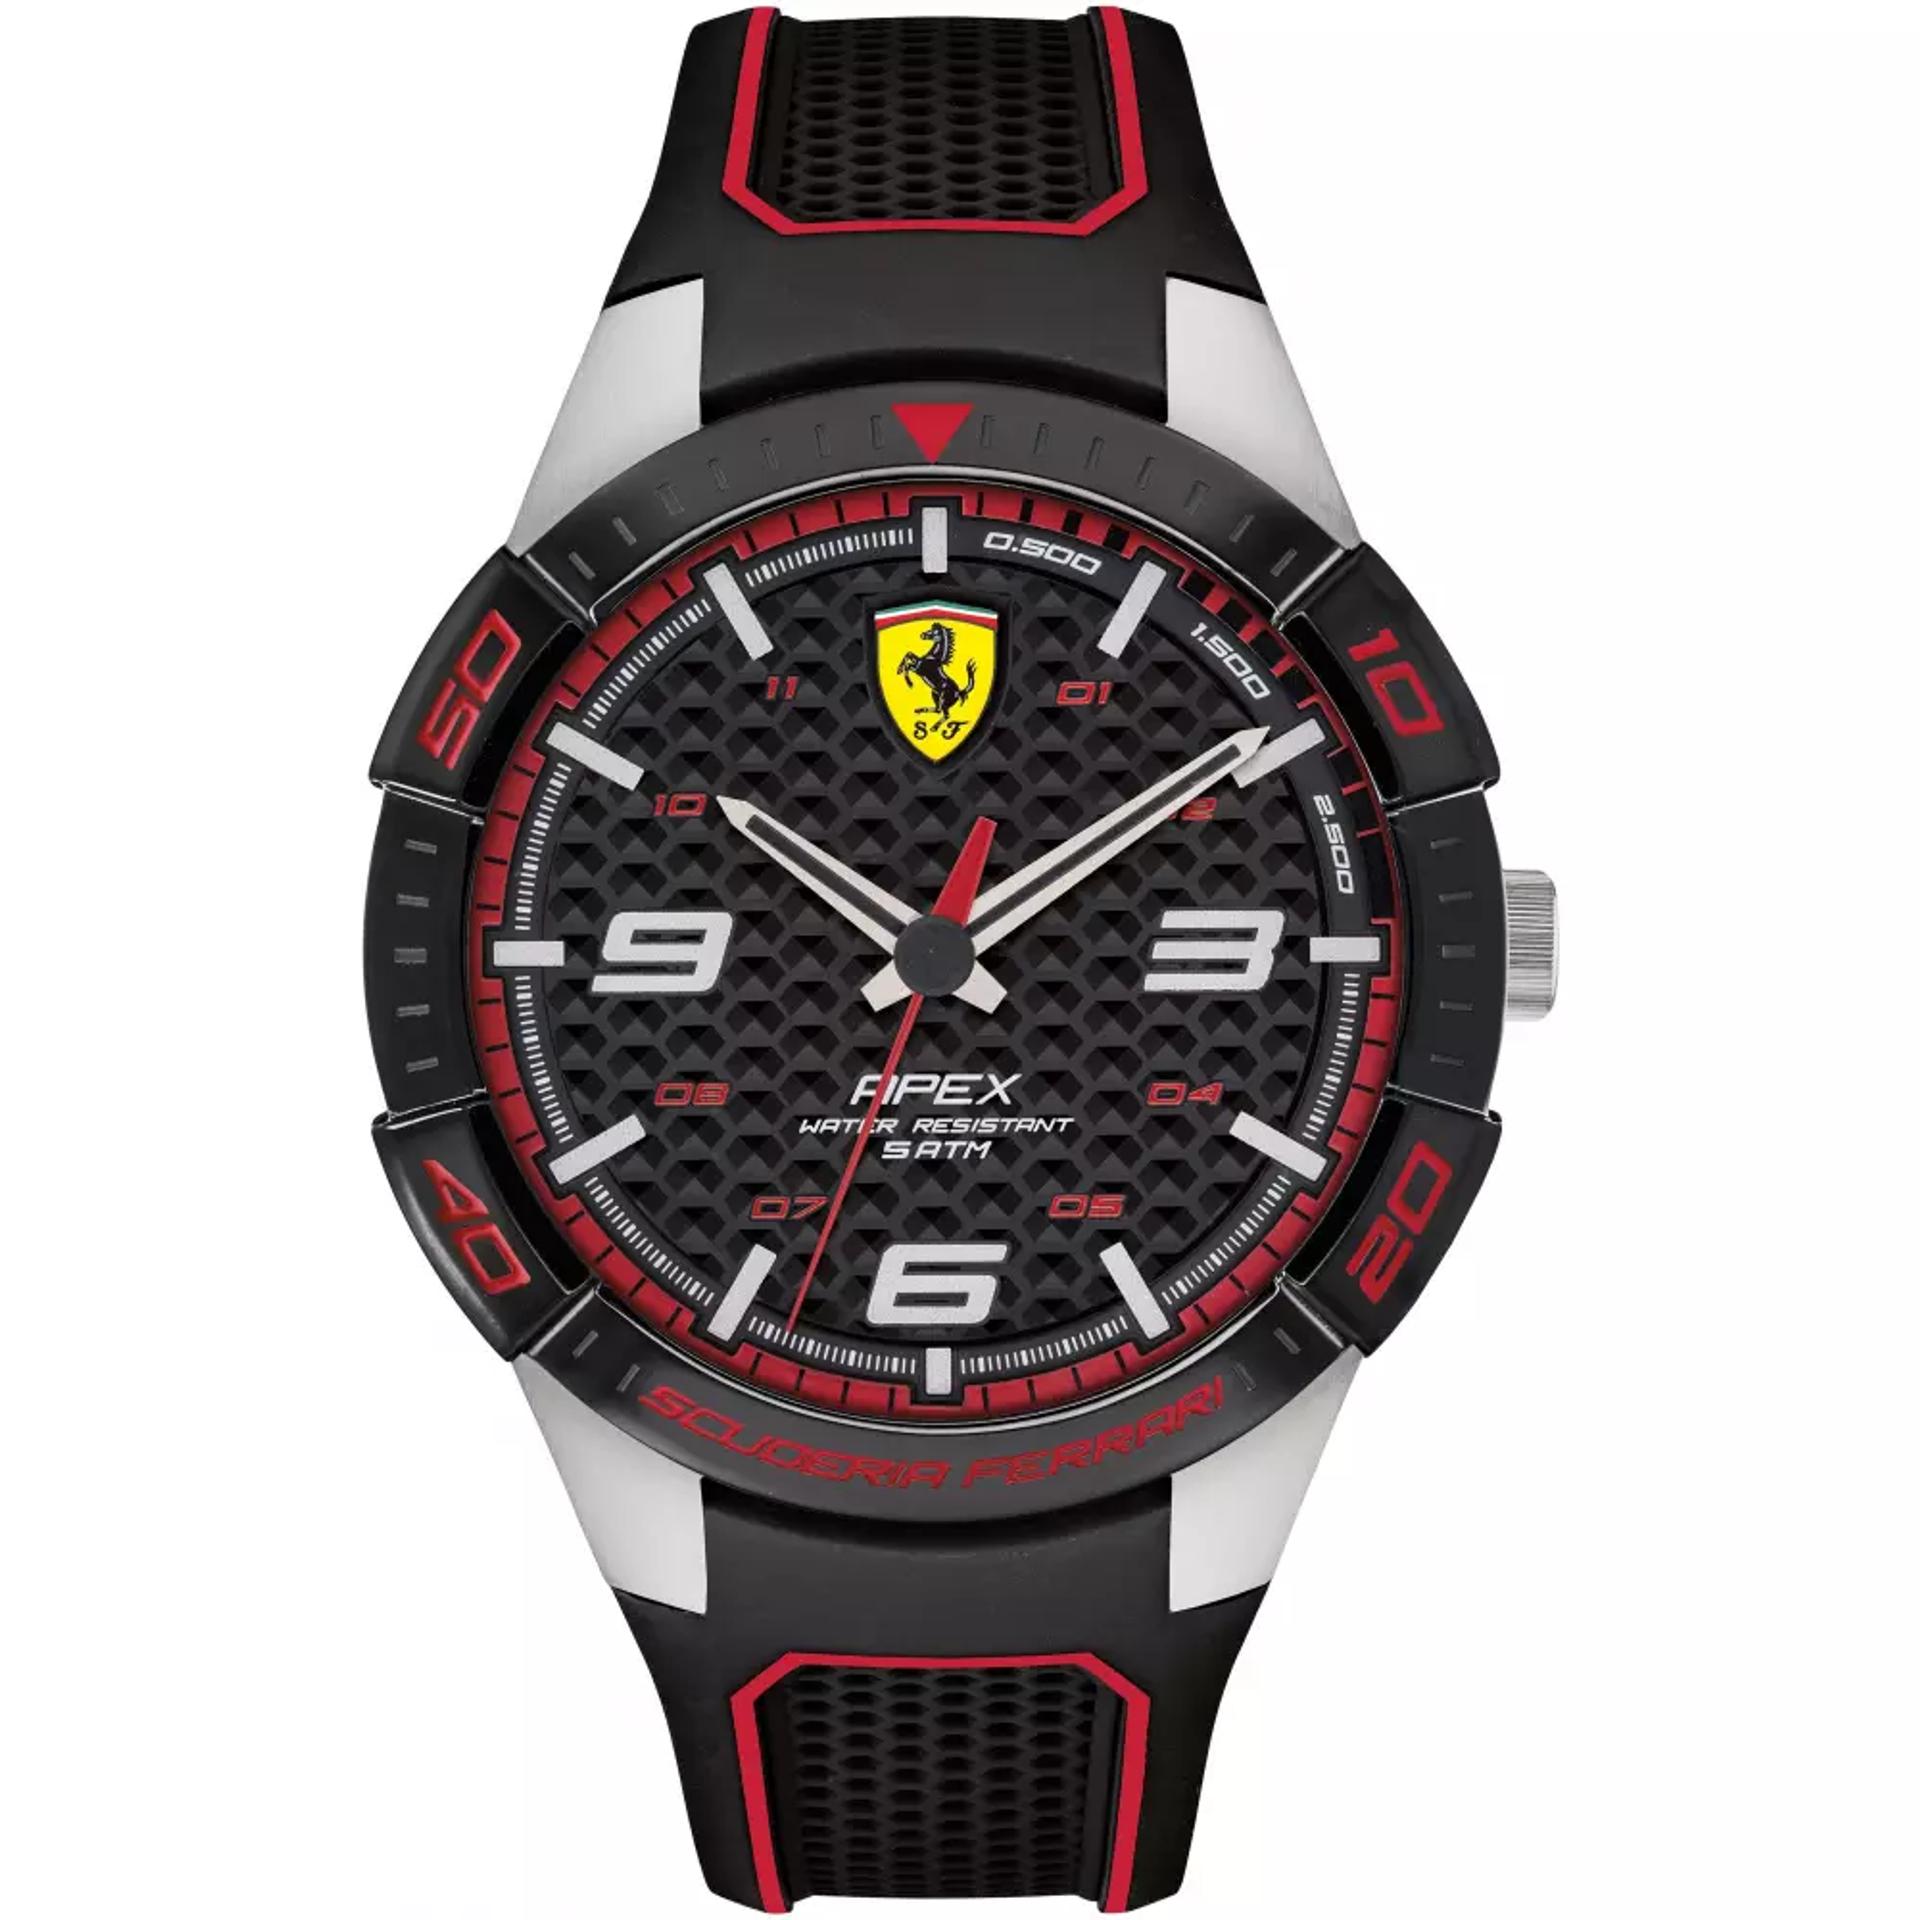 Scuderia Ferrari APEX